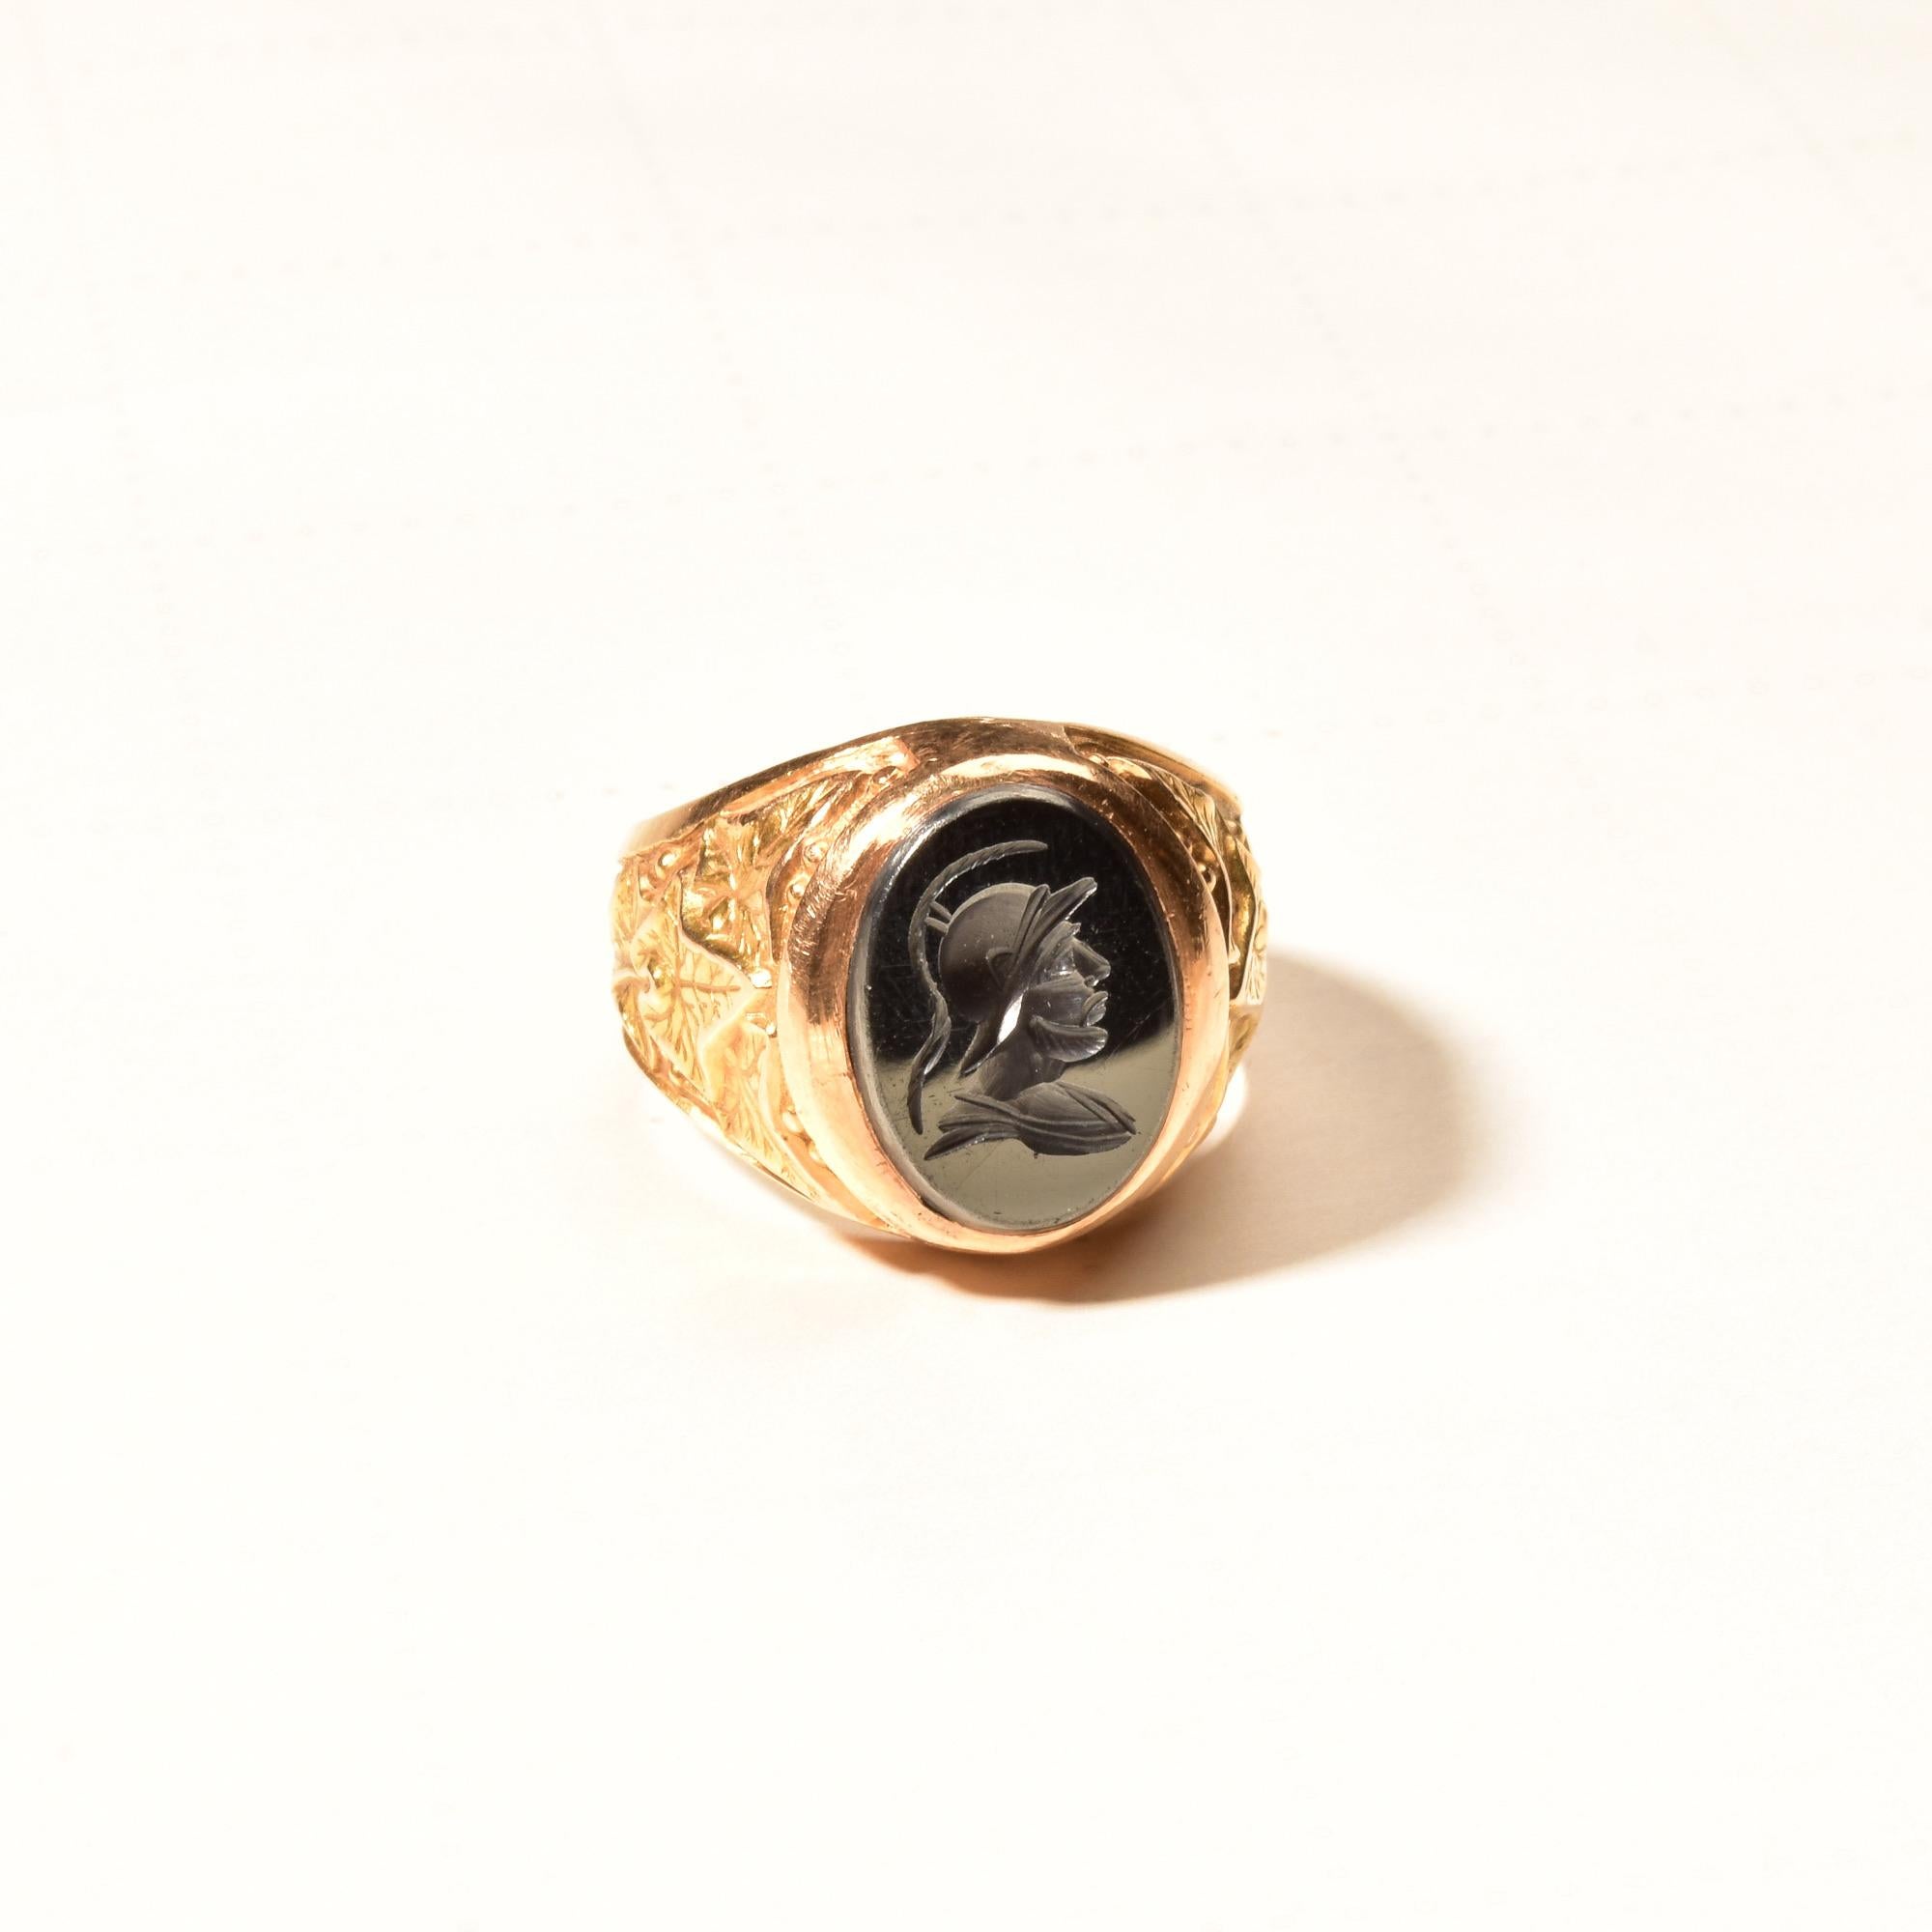 Ein zeitloser 18-karätiger Hämatit-Siegelring für eine Schmucksammlung aus der Mitte des Jahrhunderts. Mit einer reflektierenden Gladiator-Kamee auf einem robusten Gelbgoldband mit erhabenen Blattmotiven. Der Ring ist aus massivem Gold gefertigt und